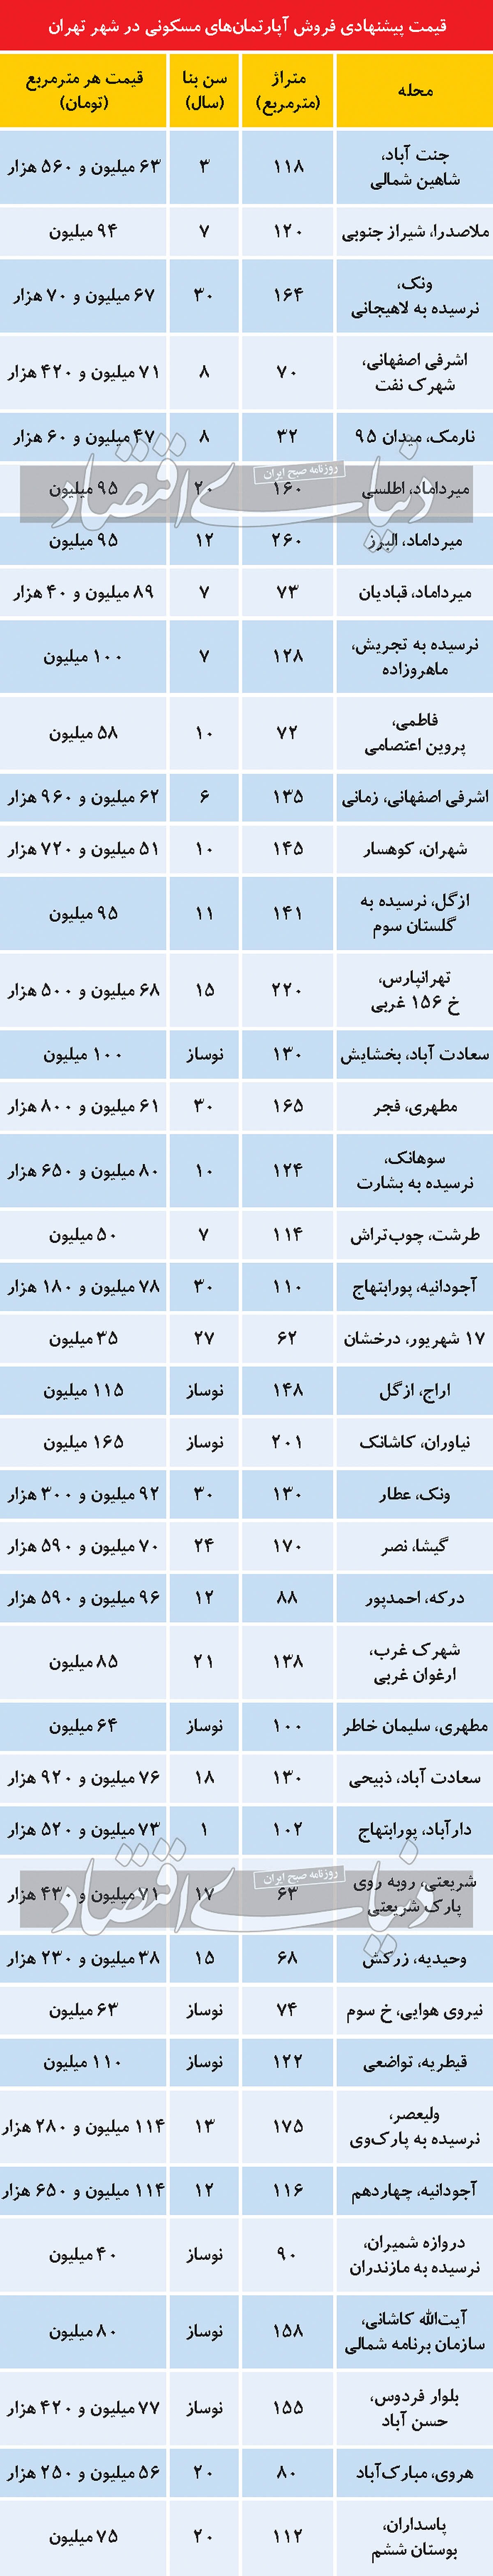 قیمت پیشنهادی فروش آپارتمان های مسکونی در شهر تهران